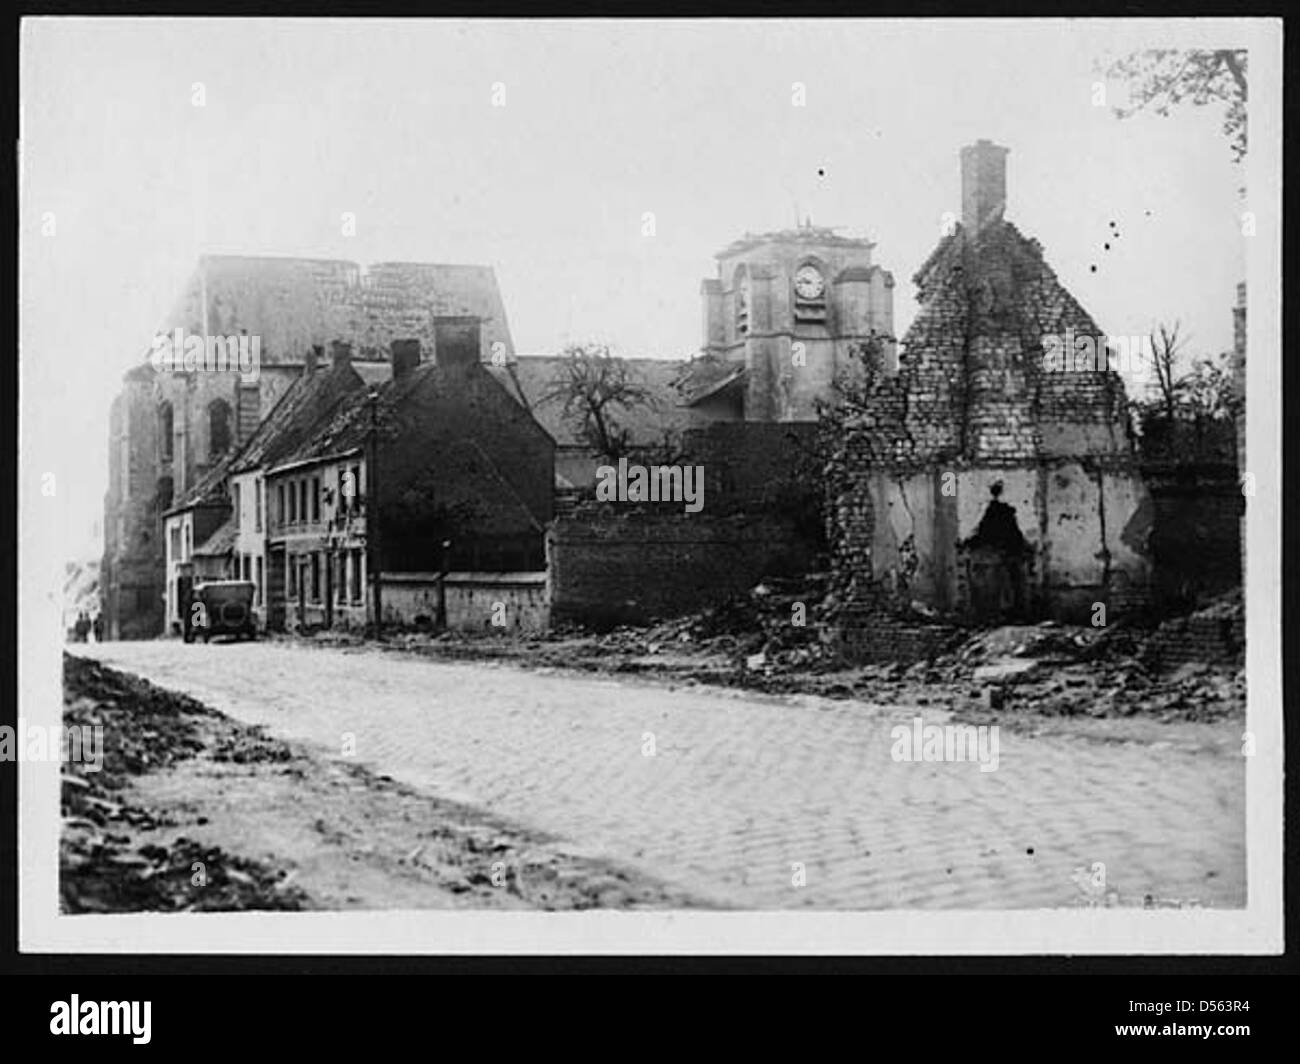 Dommages de Shell dans le village de Bray, France, au cours de la Première Guerre mondiale Banque D'Images